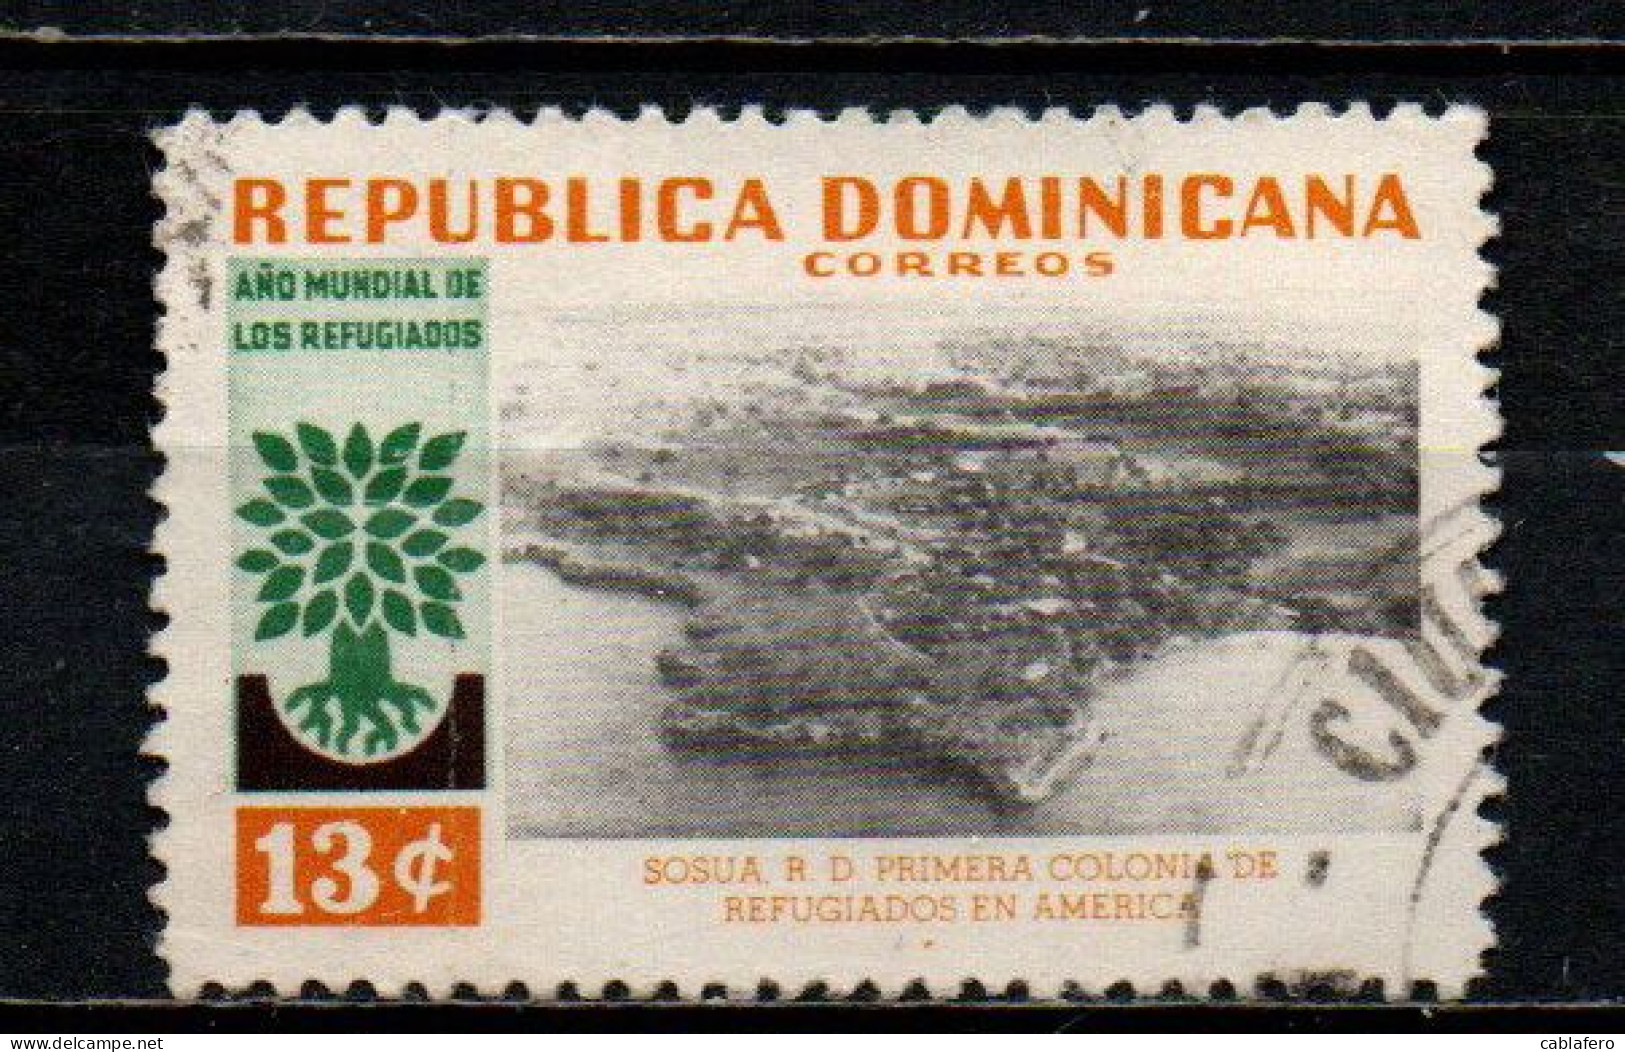 REPUBBLICA DOMENICANA - 1960 - ANNO INTERNAZIONALE DEL RIFUGIATO - USATO - Dominican Republic